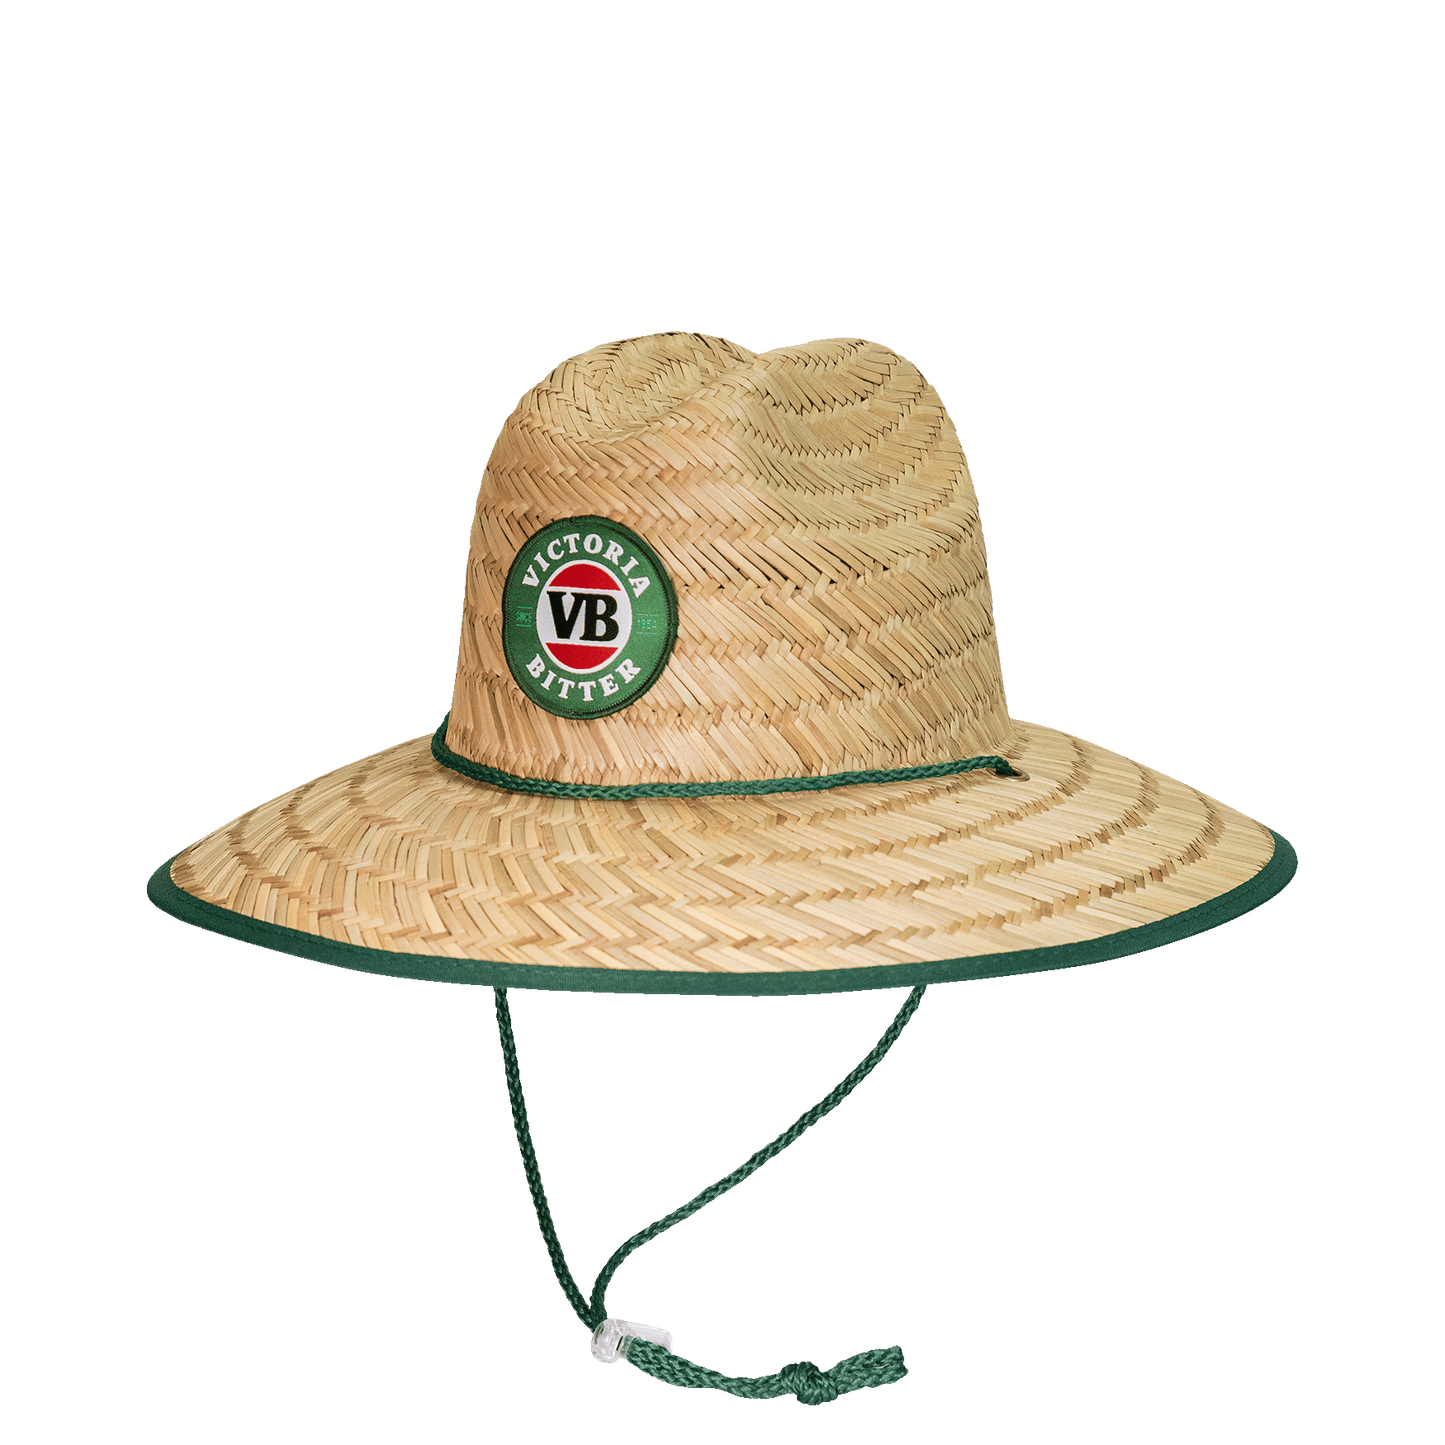 Victor Bravo's Straw Hats VB2018 Straw Hat